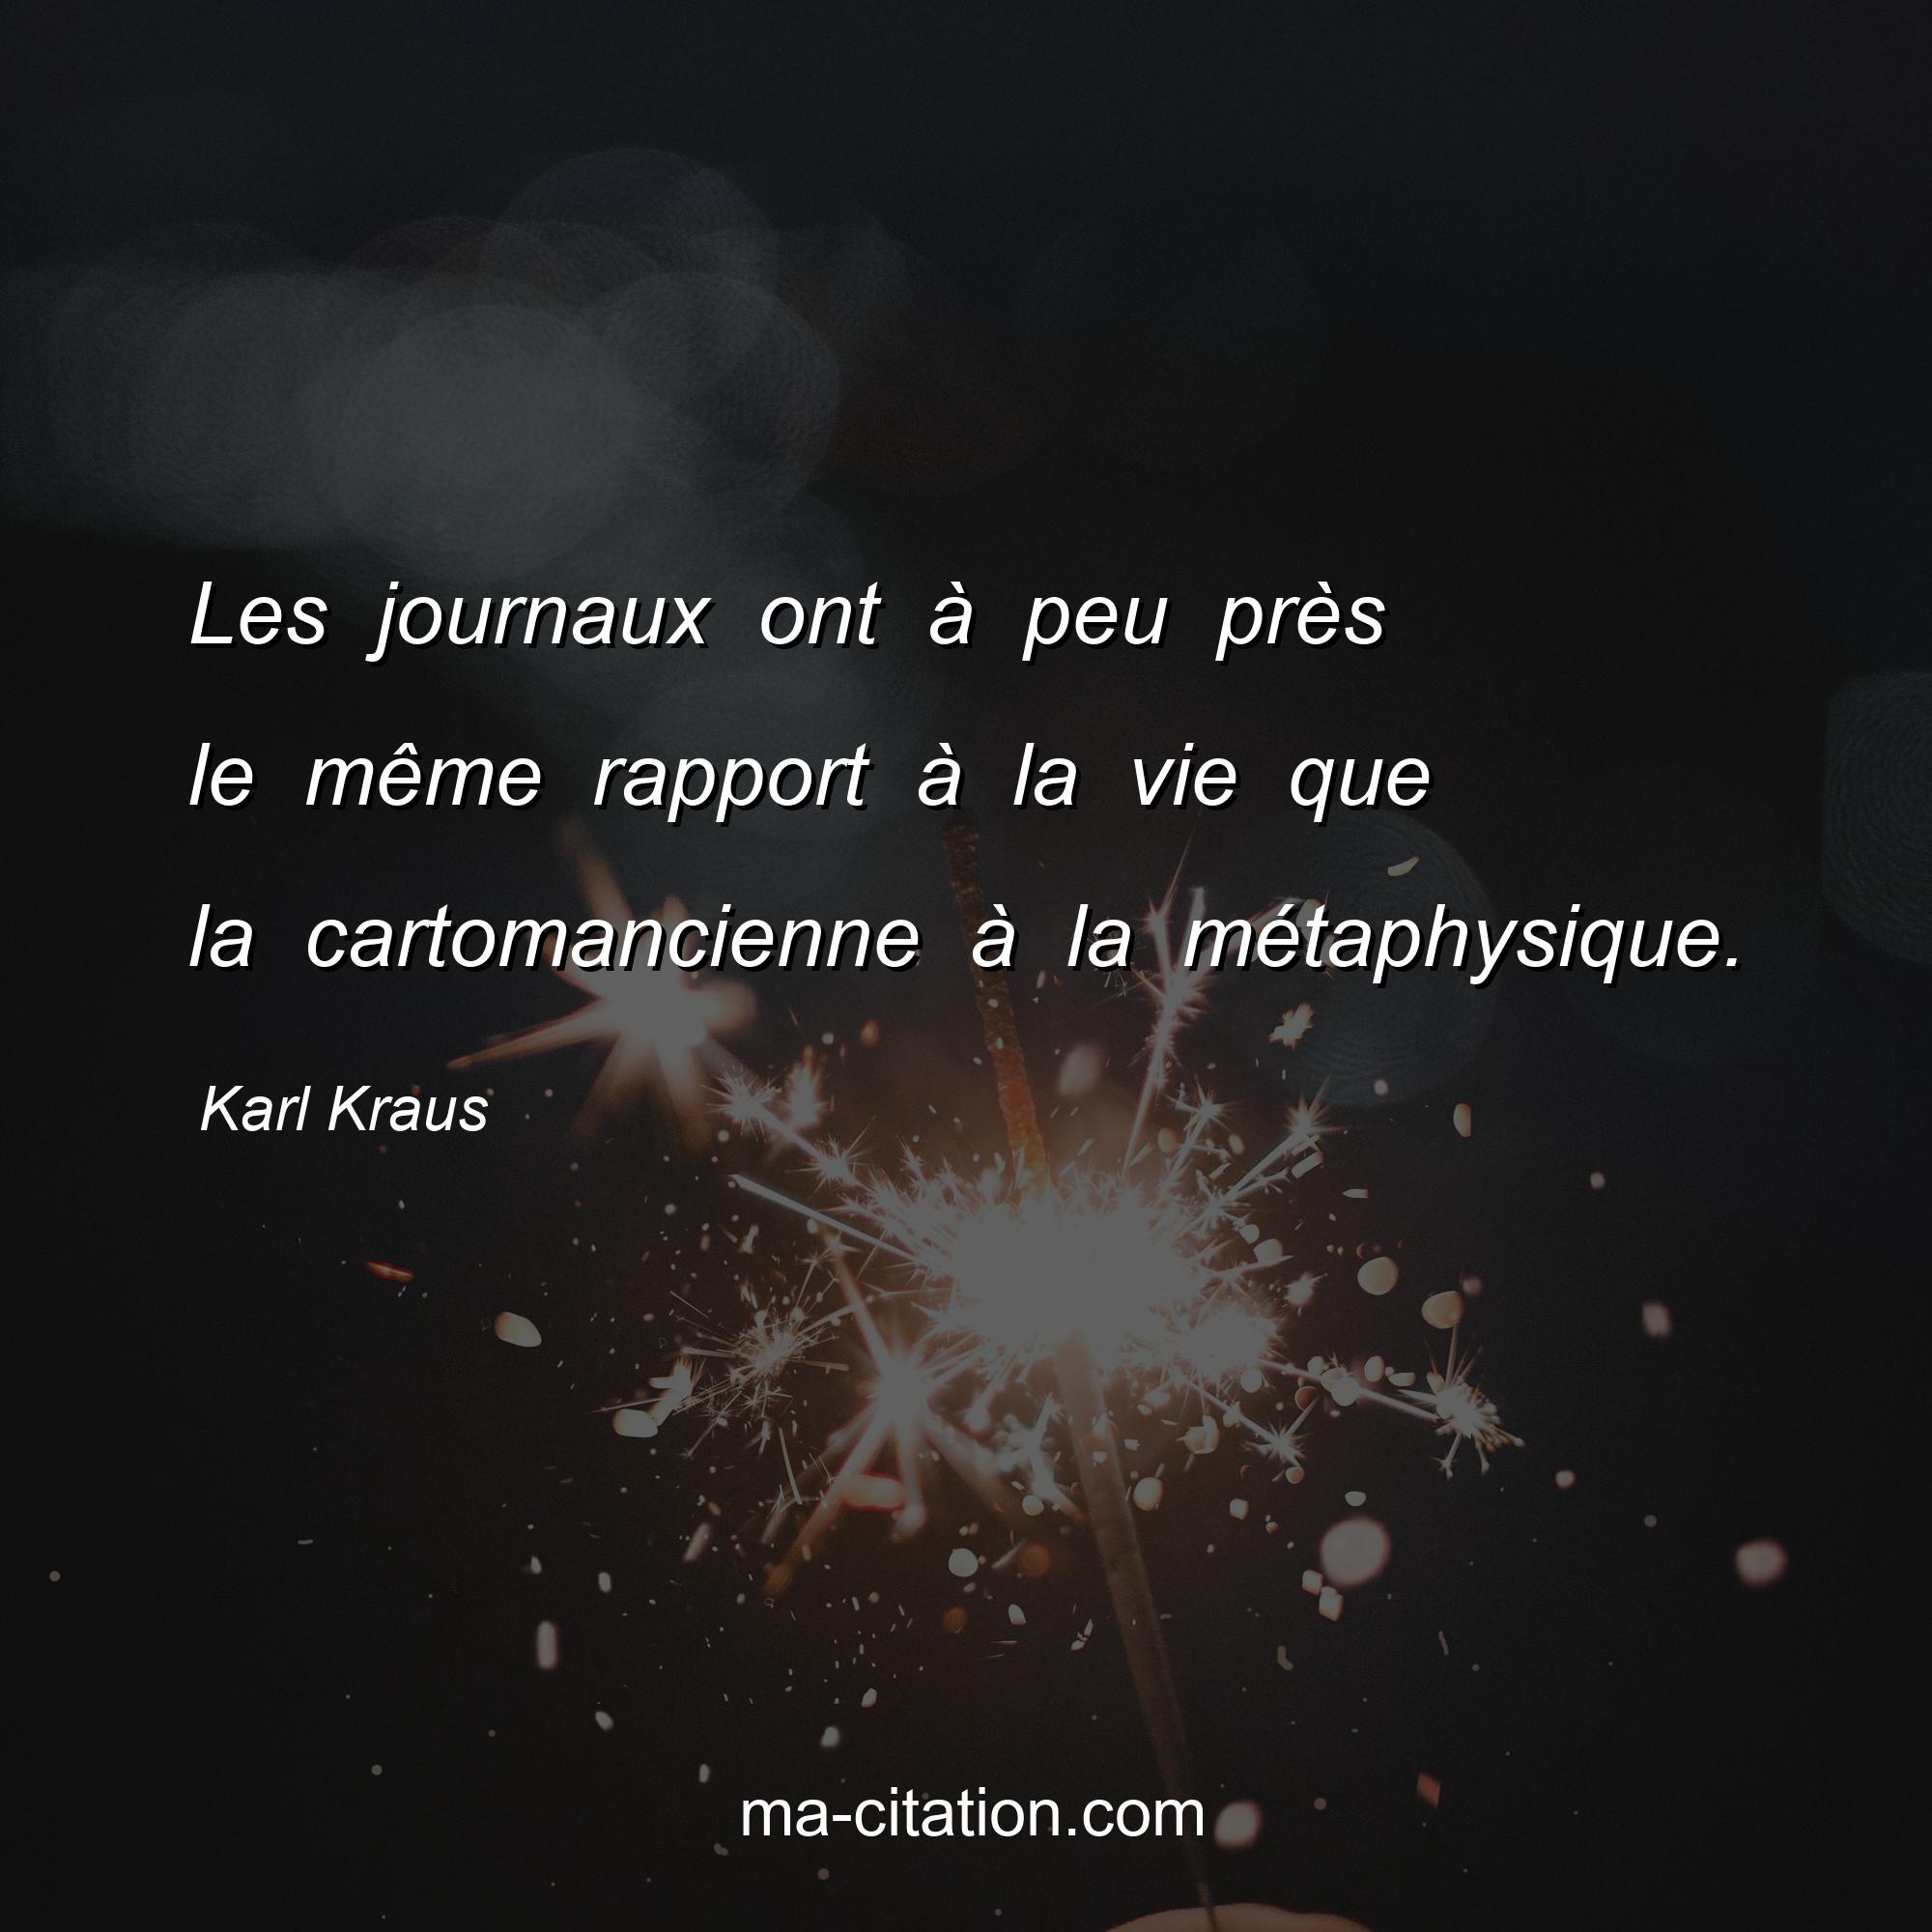 Karl Kraus : Les journaux ont à peu près le même rapport à la vie que la cartomancienne à la métaphysique.